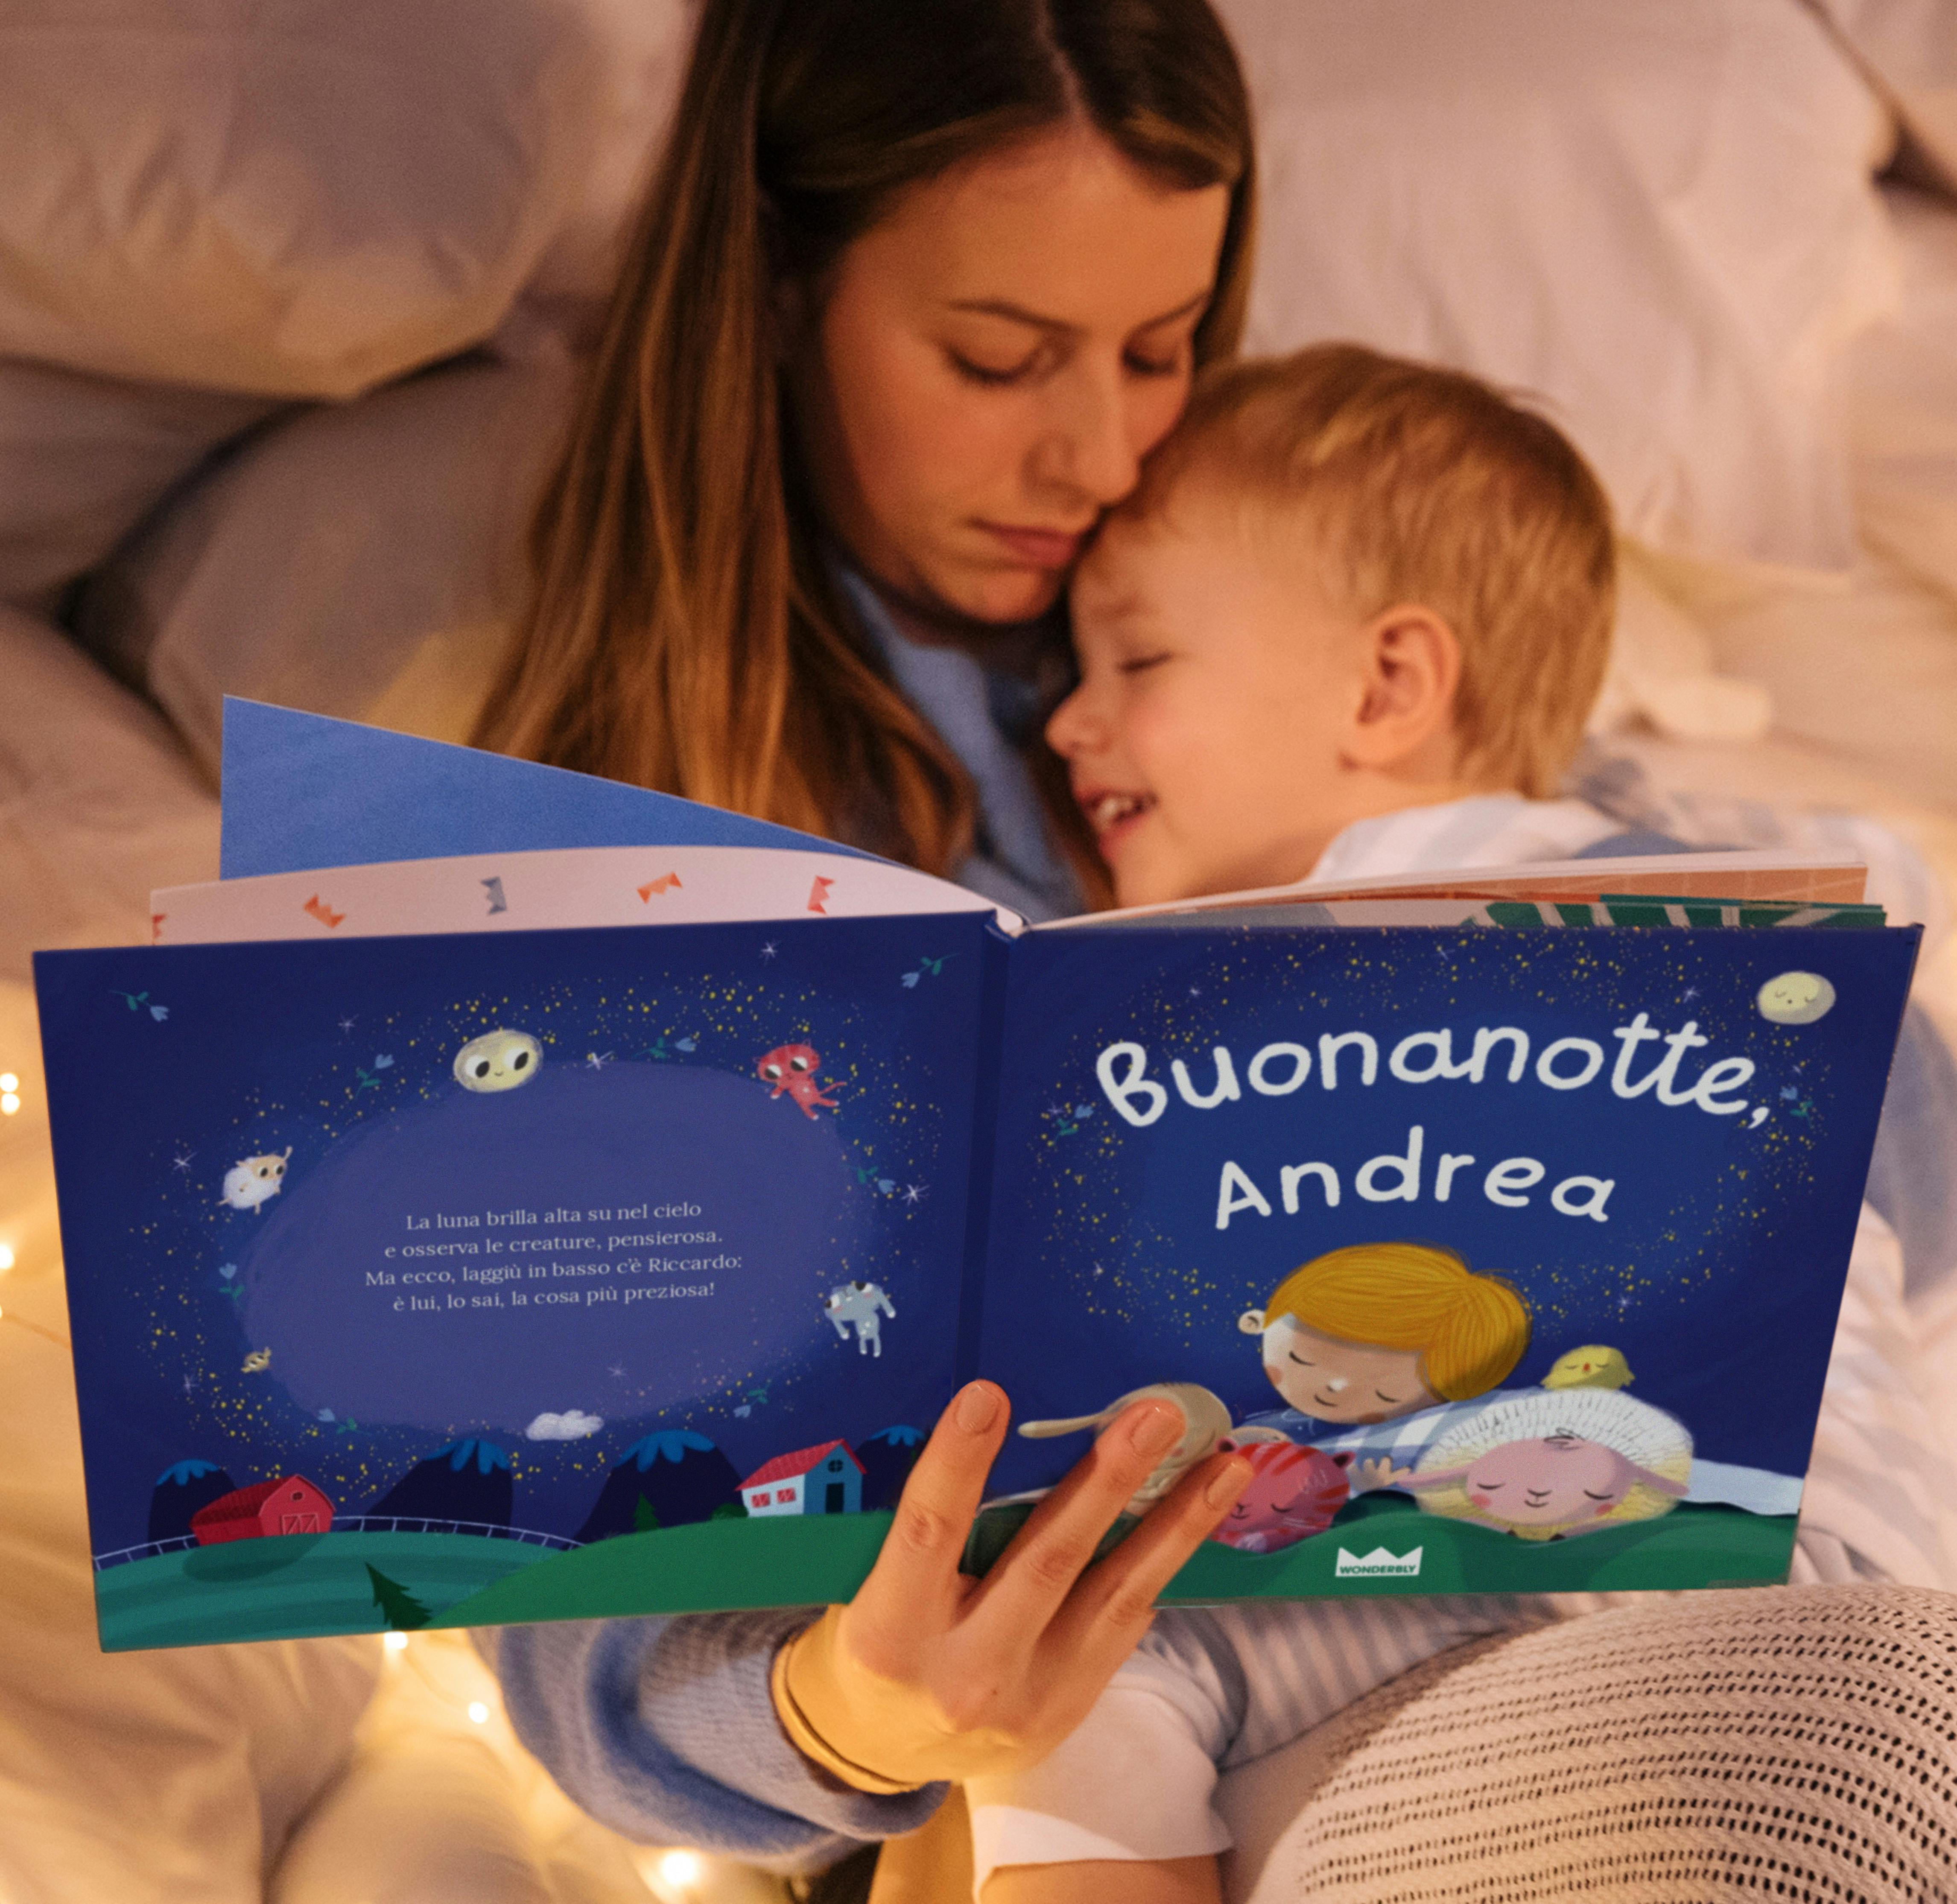 Madre e figlio leggono "Buonanotte".